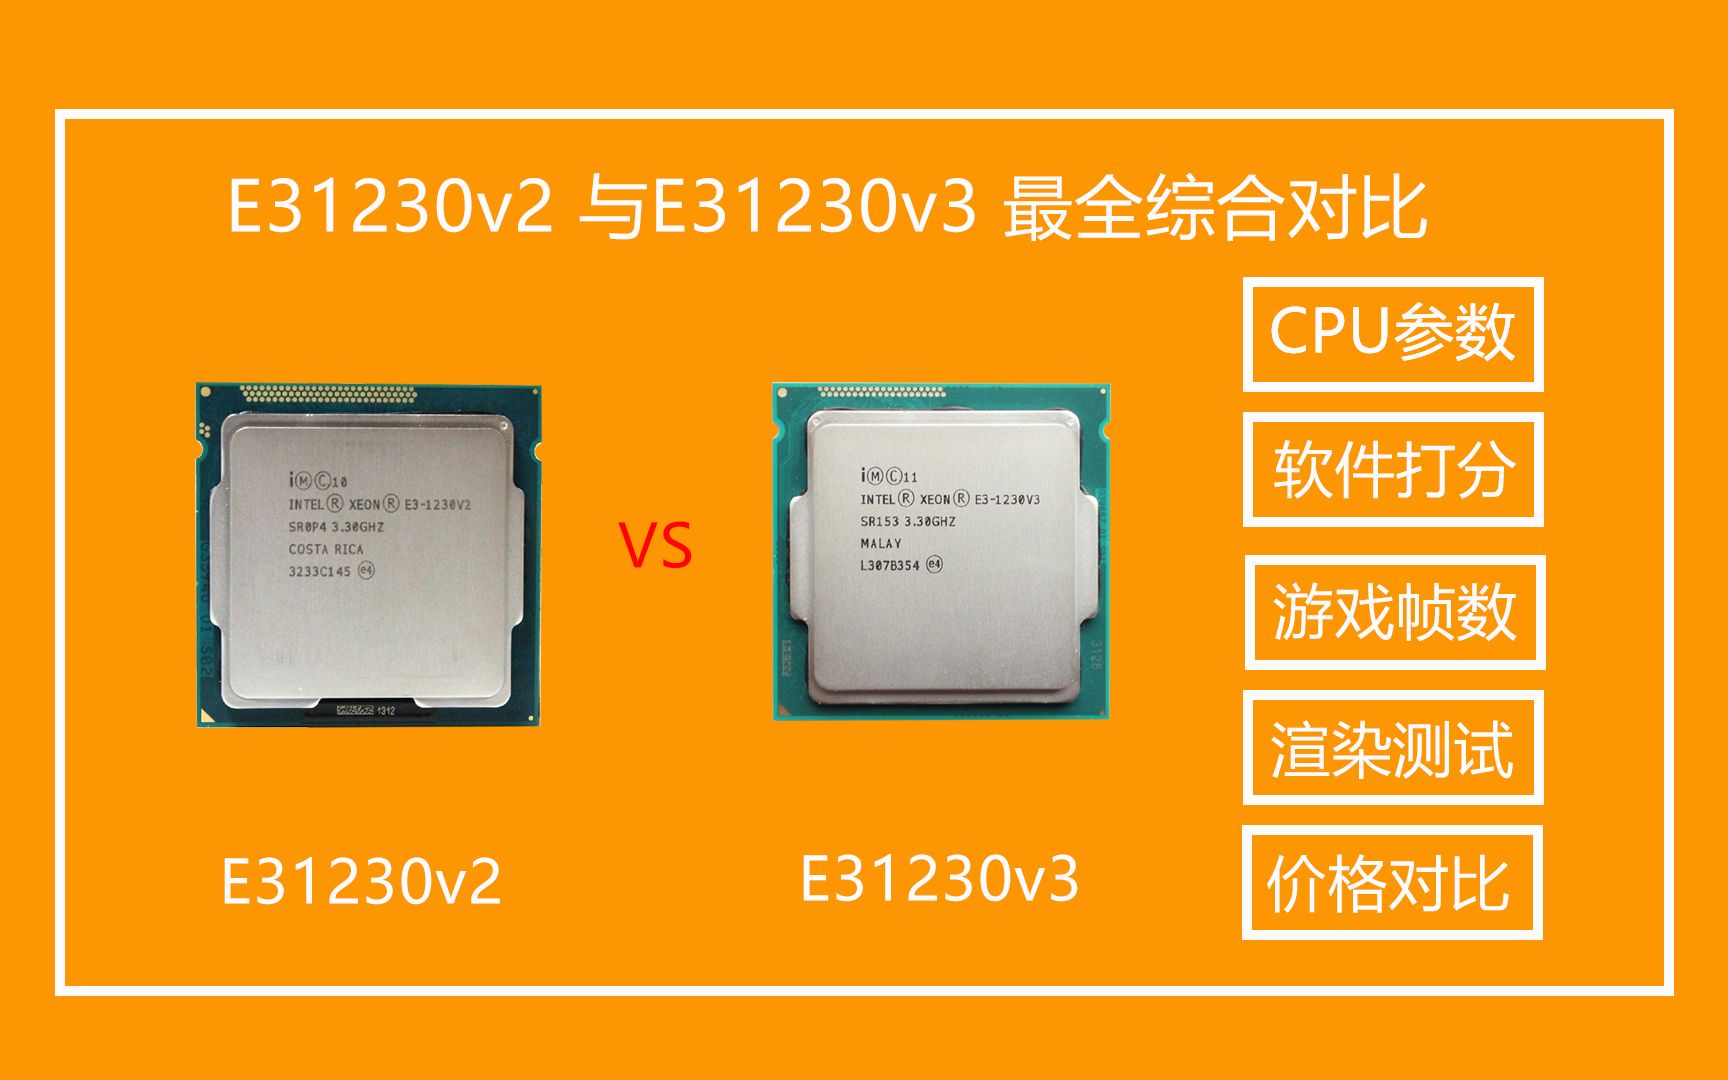 酷睿i5-7400处理器性能卓越，能耗低功耗，应用广泛